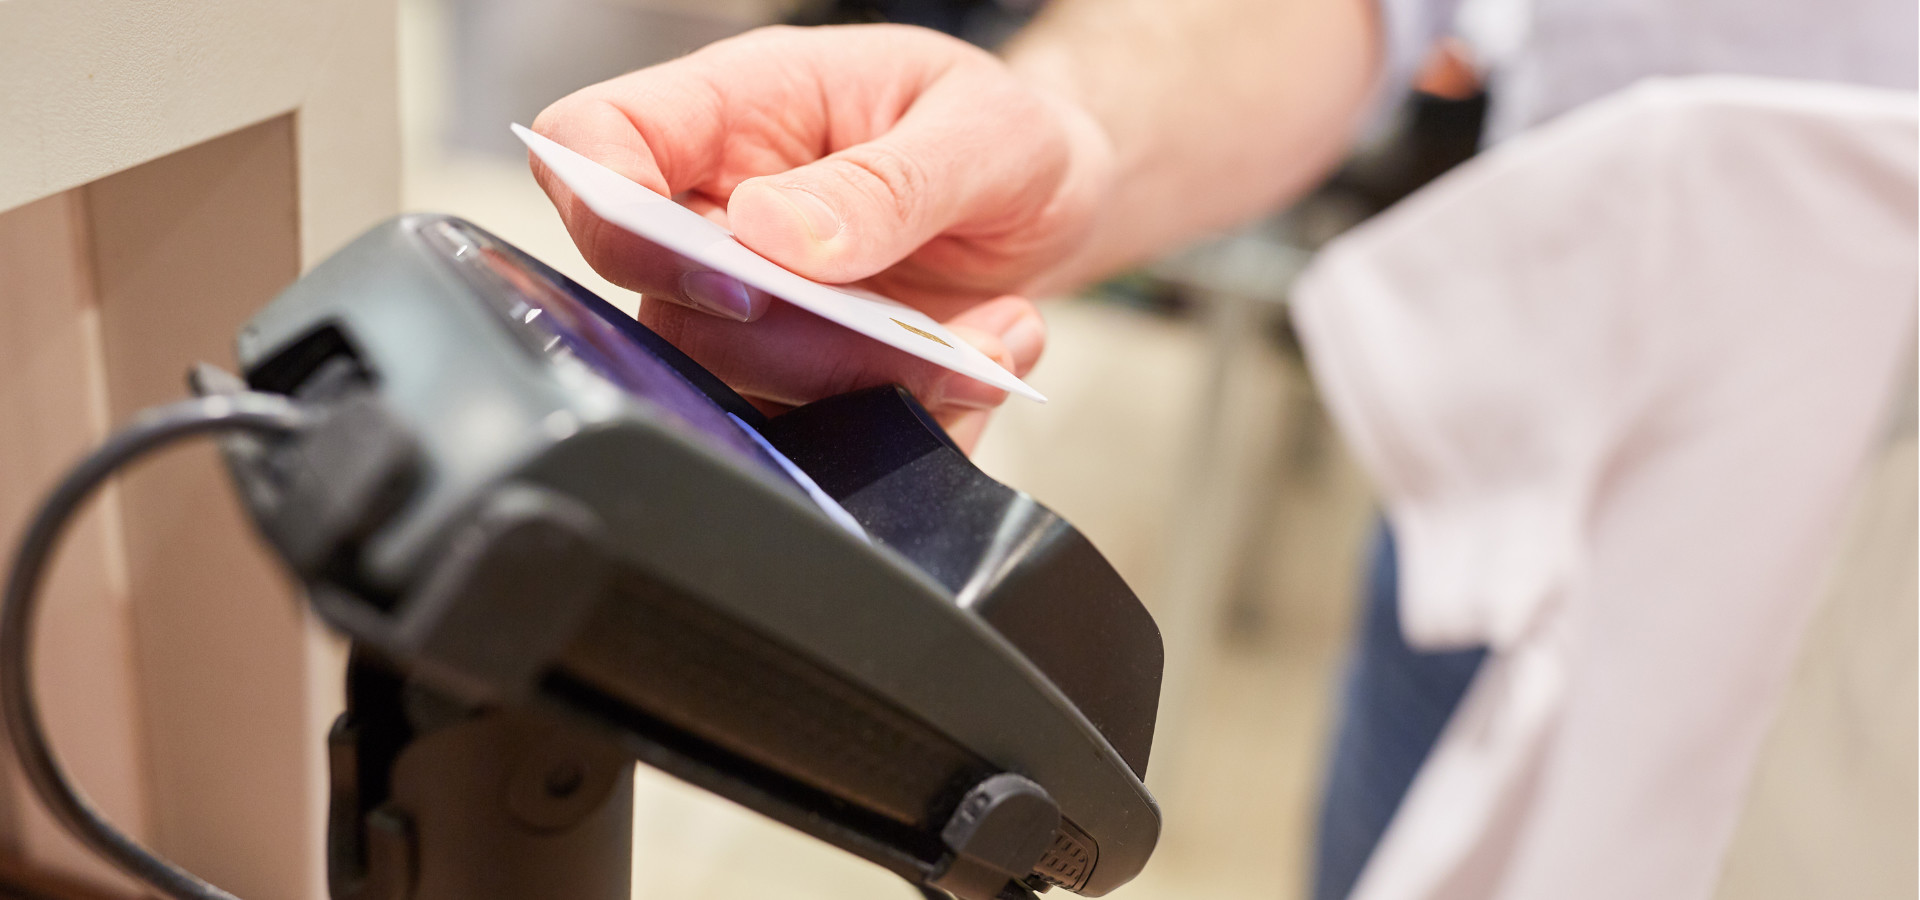 NFC Bankkarte vor NFC Kassensystem im Einzelhandel